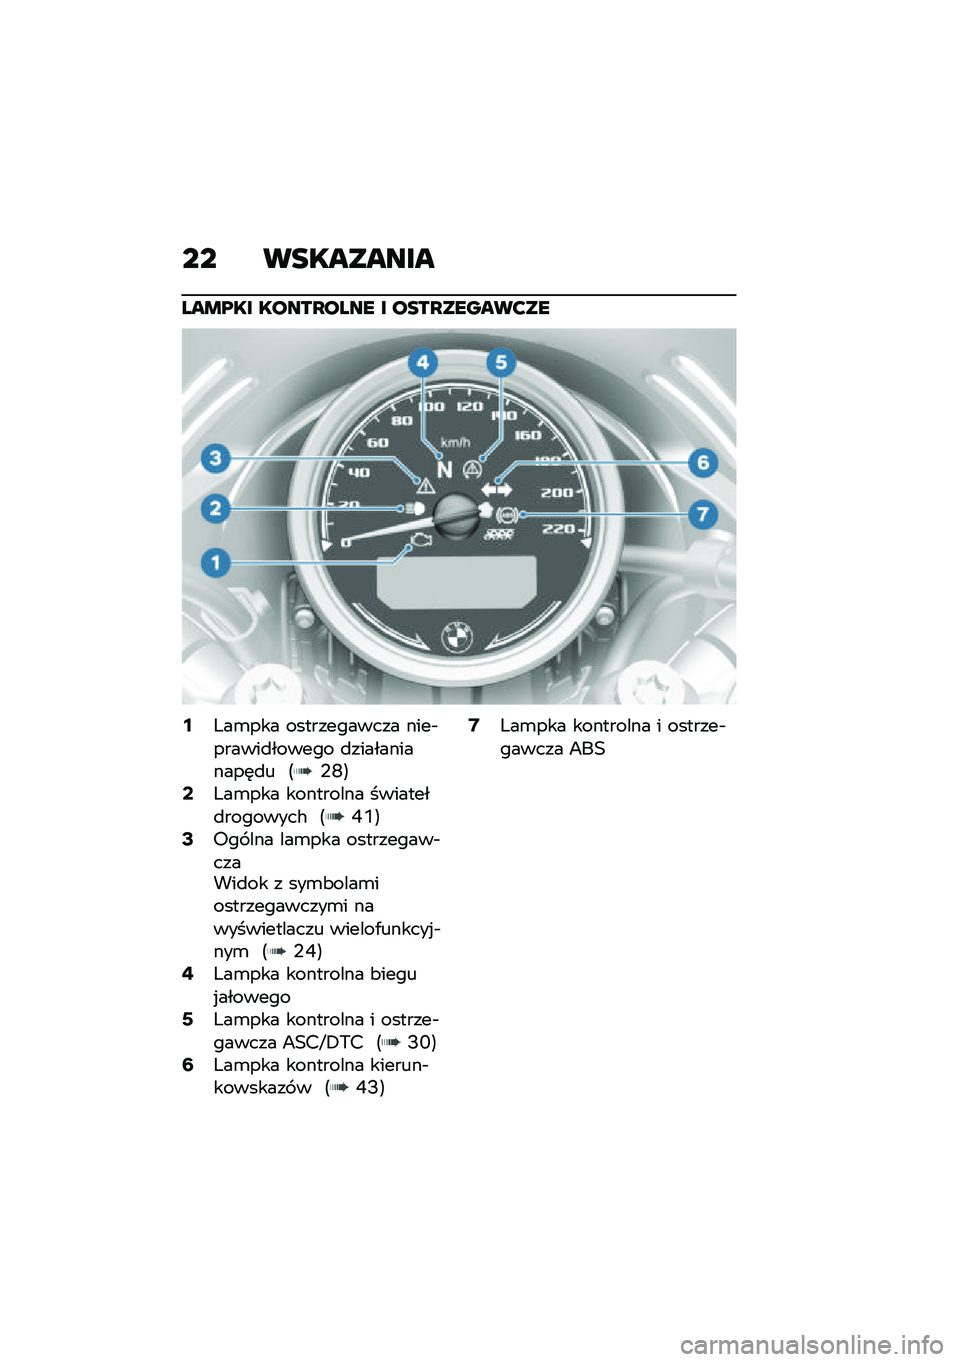 BMW MOTORRAD R NINE T URVAN G/S 2020  Instrukcja obsługi (in Polish) �� ���������
���\b�@�� �����Q���� � ����Q������?��
�8�X��\b��� ������������ ����$������
������ �
������������	�
� �<�,�J�=�: